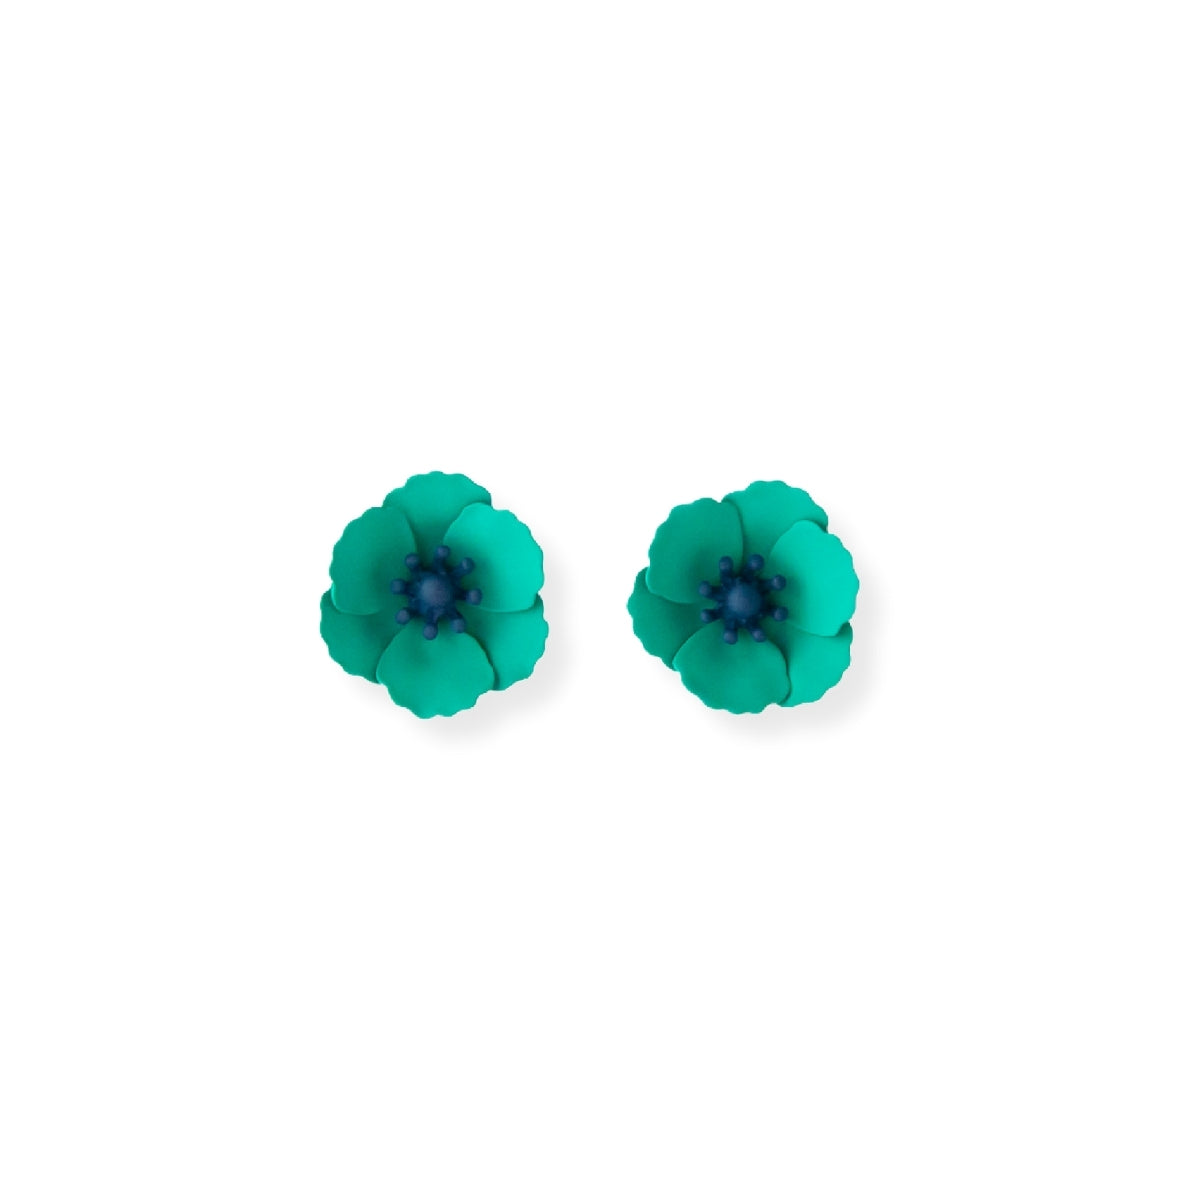 Poppy Garden Earrings